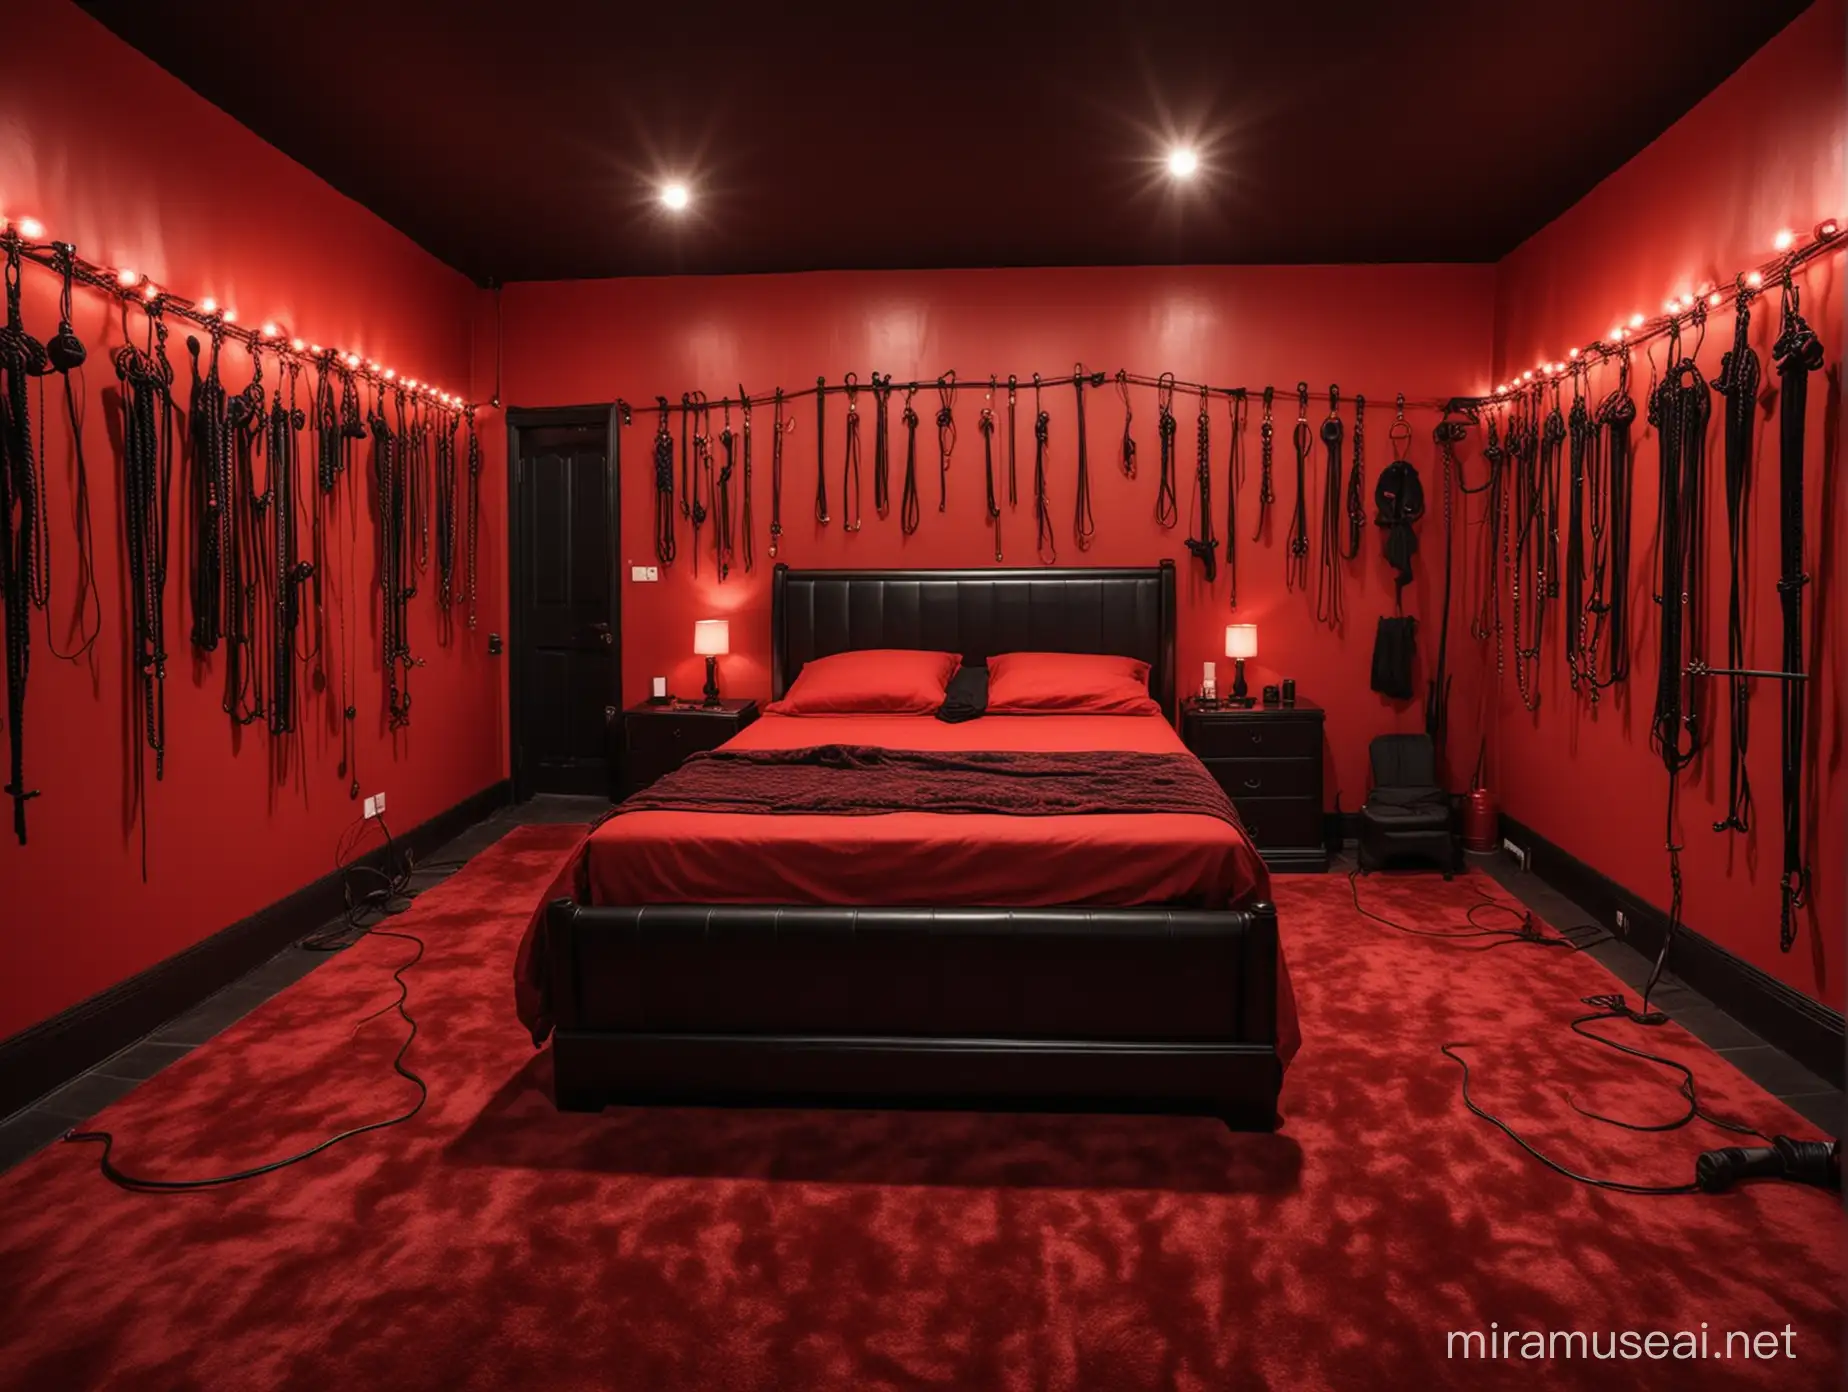 Una habitación de castigos sexuales, llena de juguetes sexuales de todo tipo, con paredes rojas en decorado negro, con tipos diferentes de látigos, una cama para castigos sexuales y con luces LED color rojo iluminando la habitación 